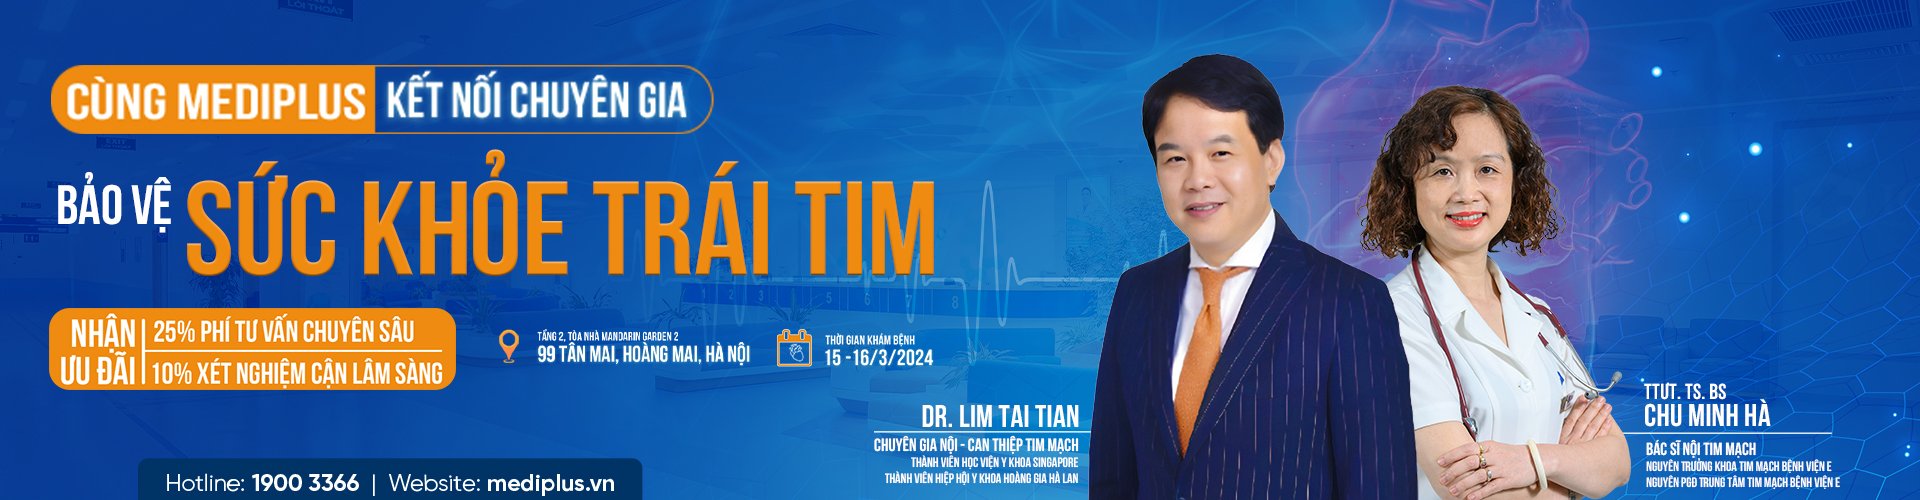 Sự kiện kết nối chuyên gia bảo về sức khỏe trái tim của Dr. Lim Tai Tian